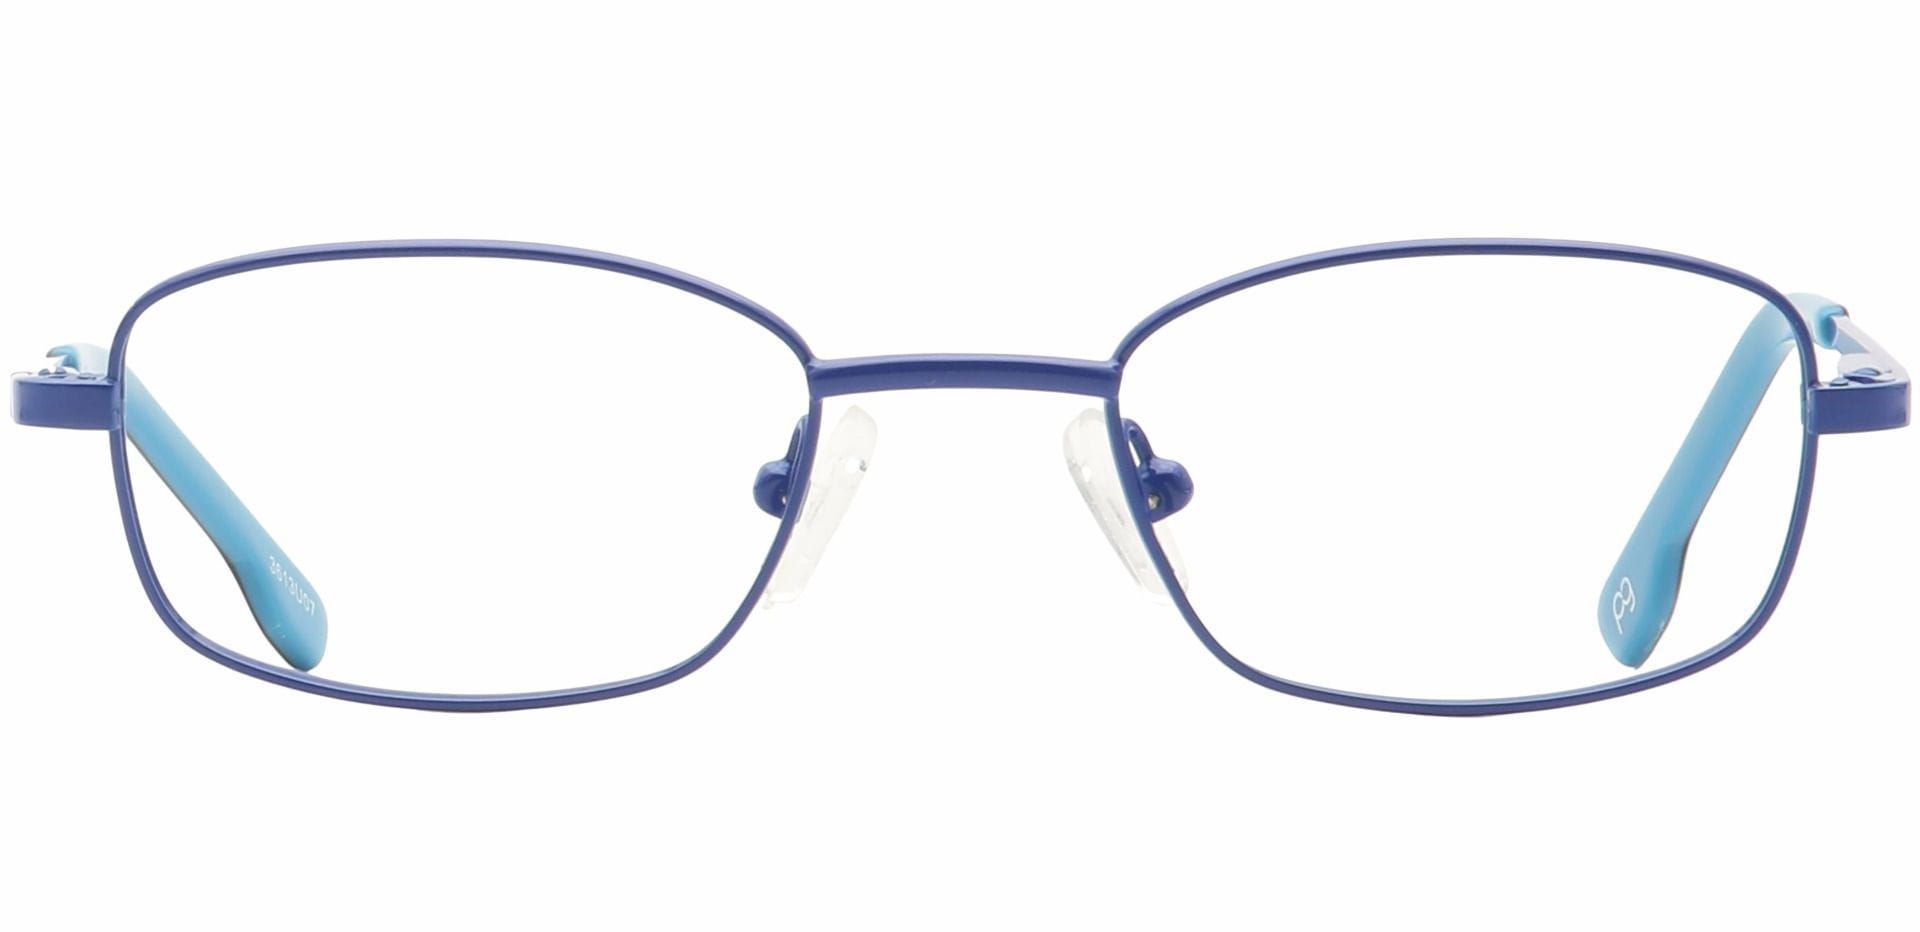 Gil Rectangle Non-Rx Glasses - Blue